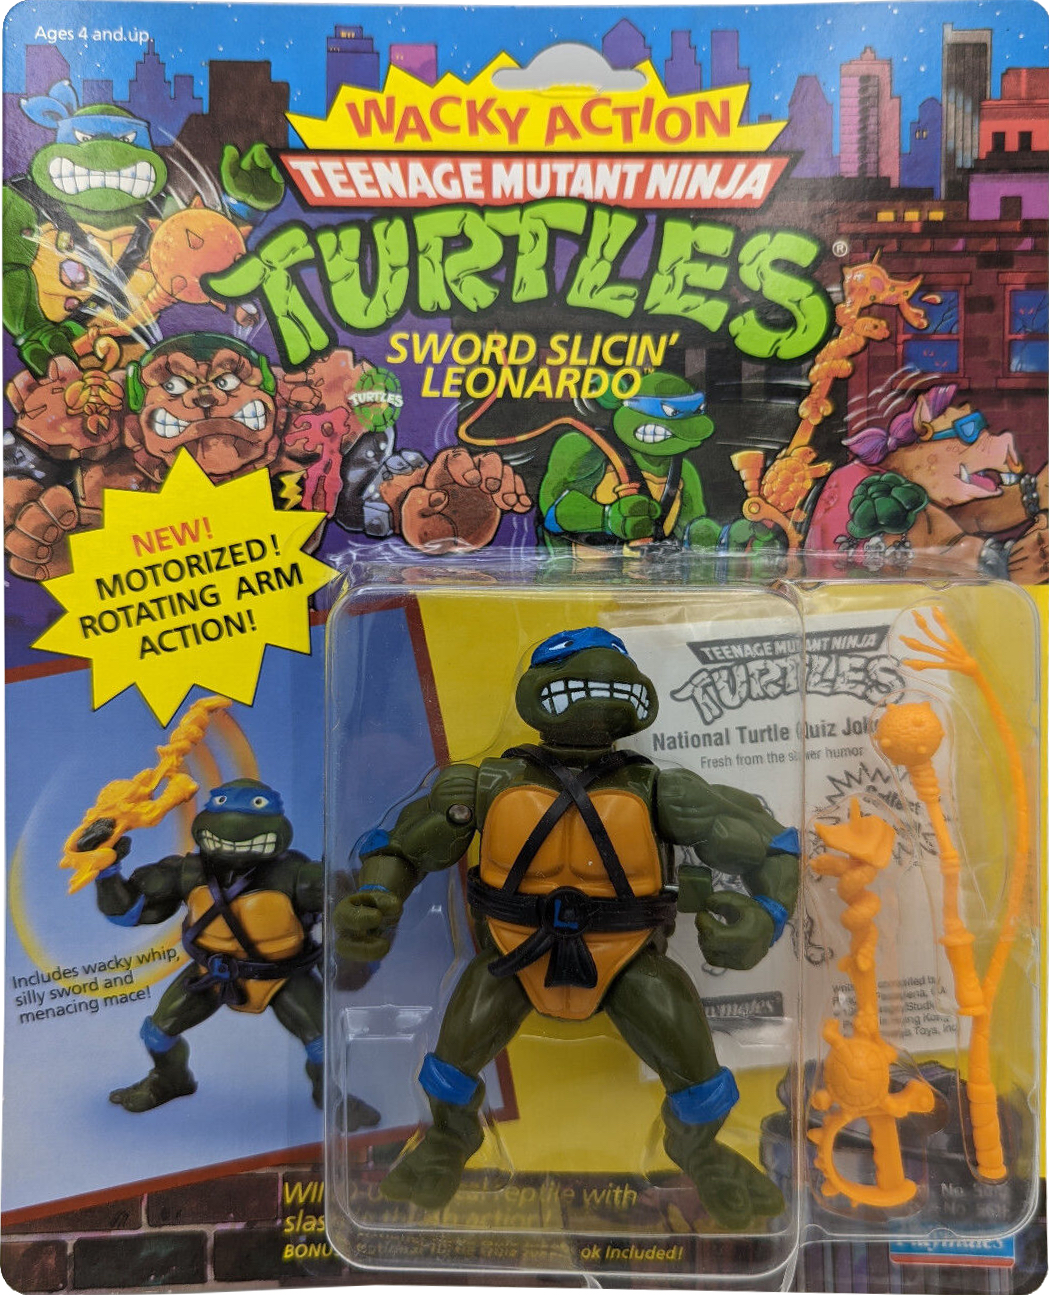 Teenage Mutant Ninja Turtles Playmates Sword Slicin' Leonardo